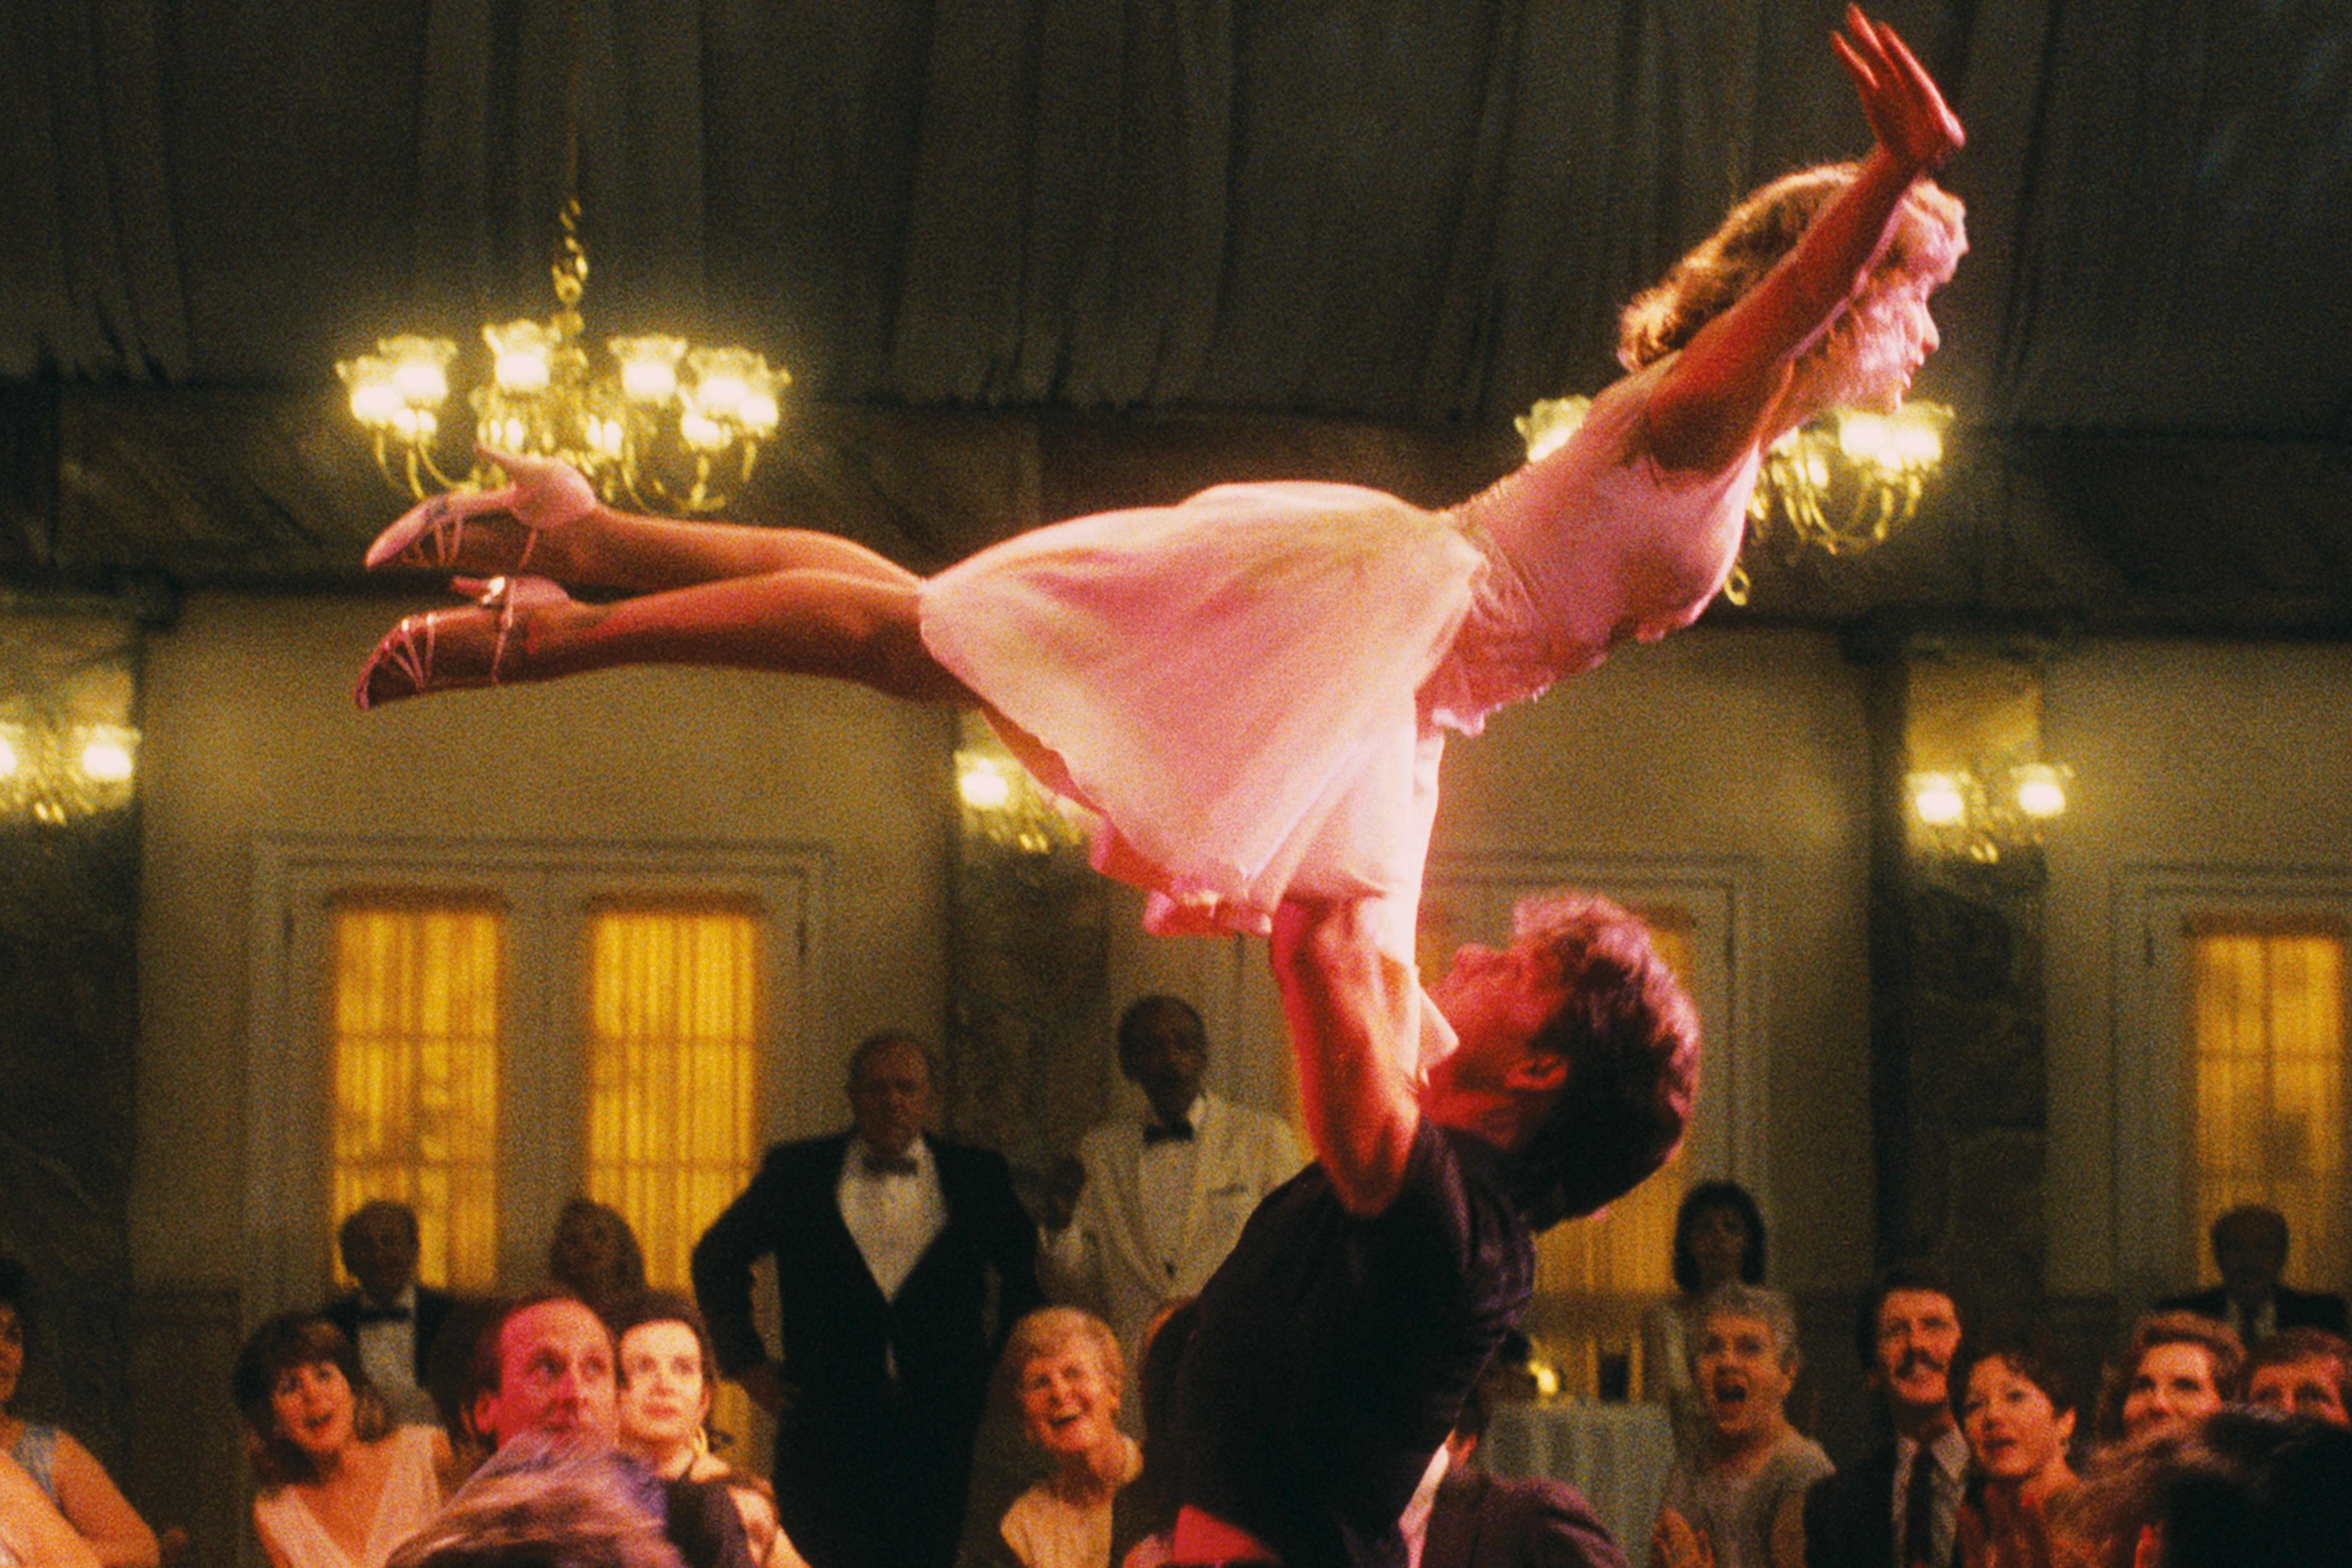 Memórias do filme: o drama romântico dos anos 80 'Dirty Dancing' foi um marco na amizade de Lucy Thackray